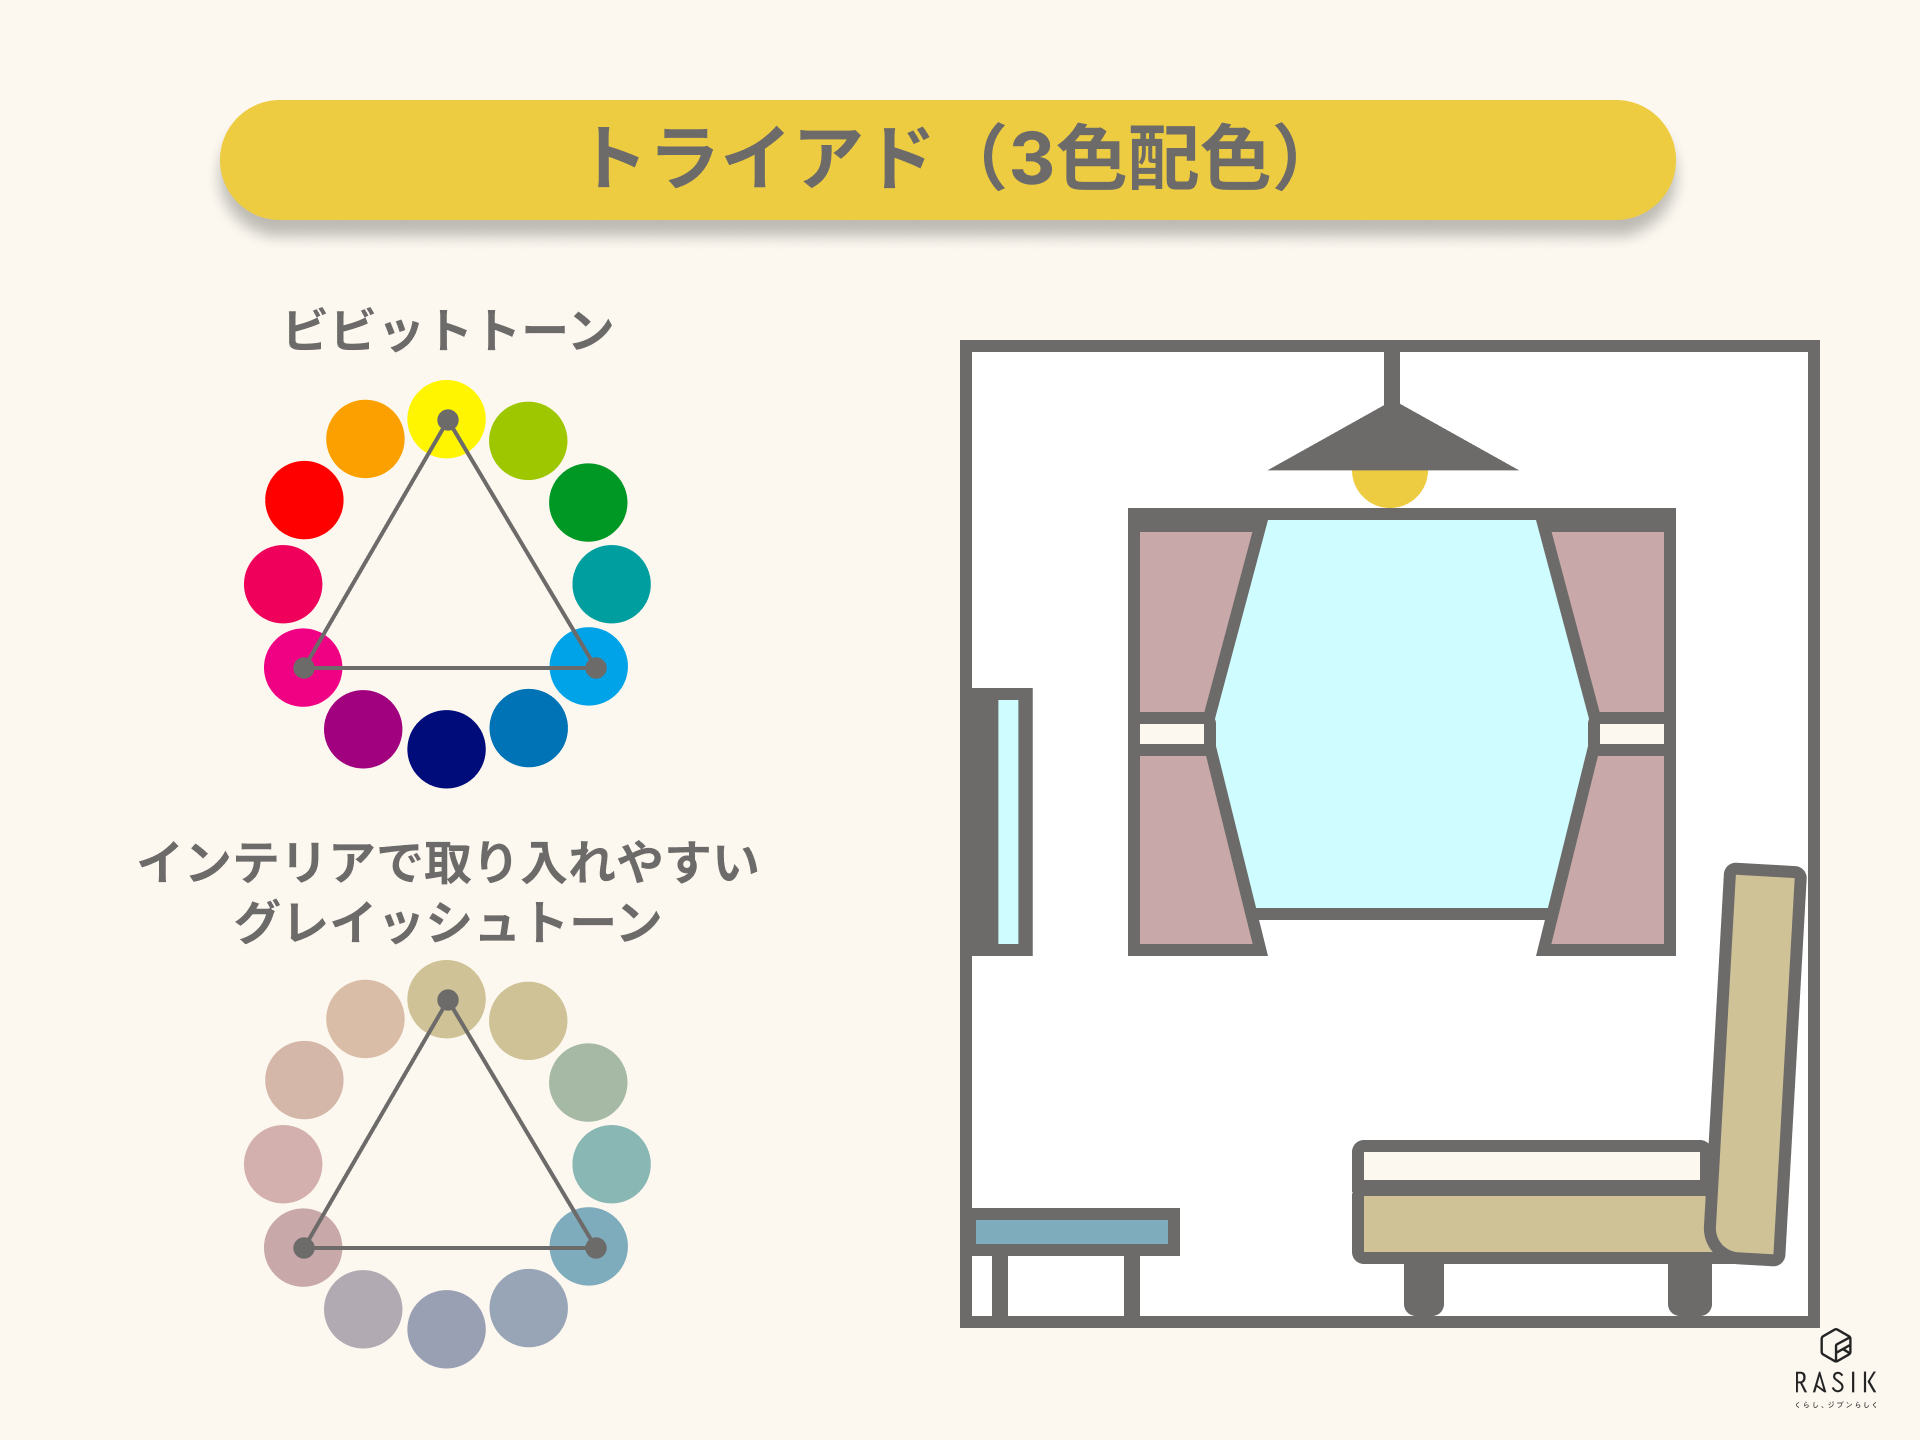 トライアド（3色配色）の対照色相の配色パターンの例